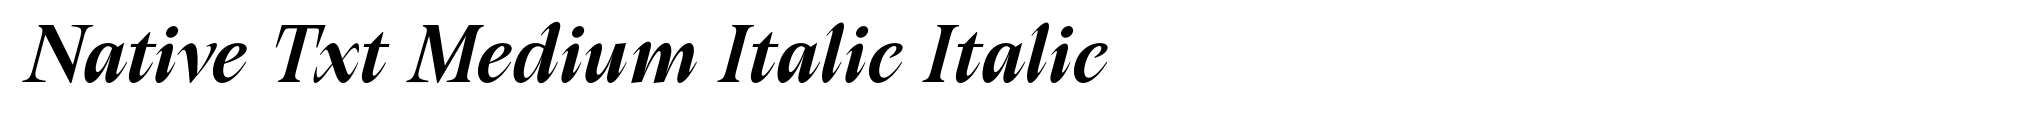 Native Txt Medium Italic Italic image